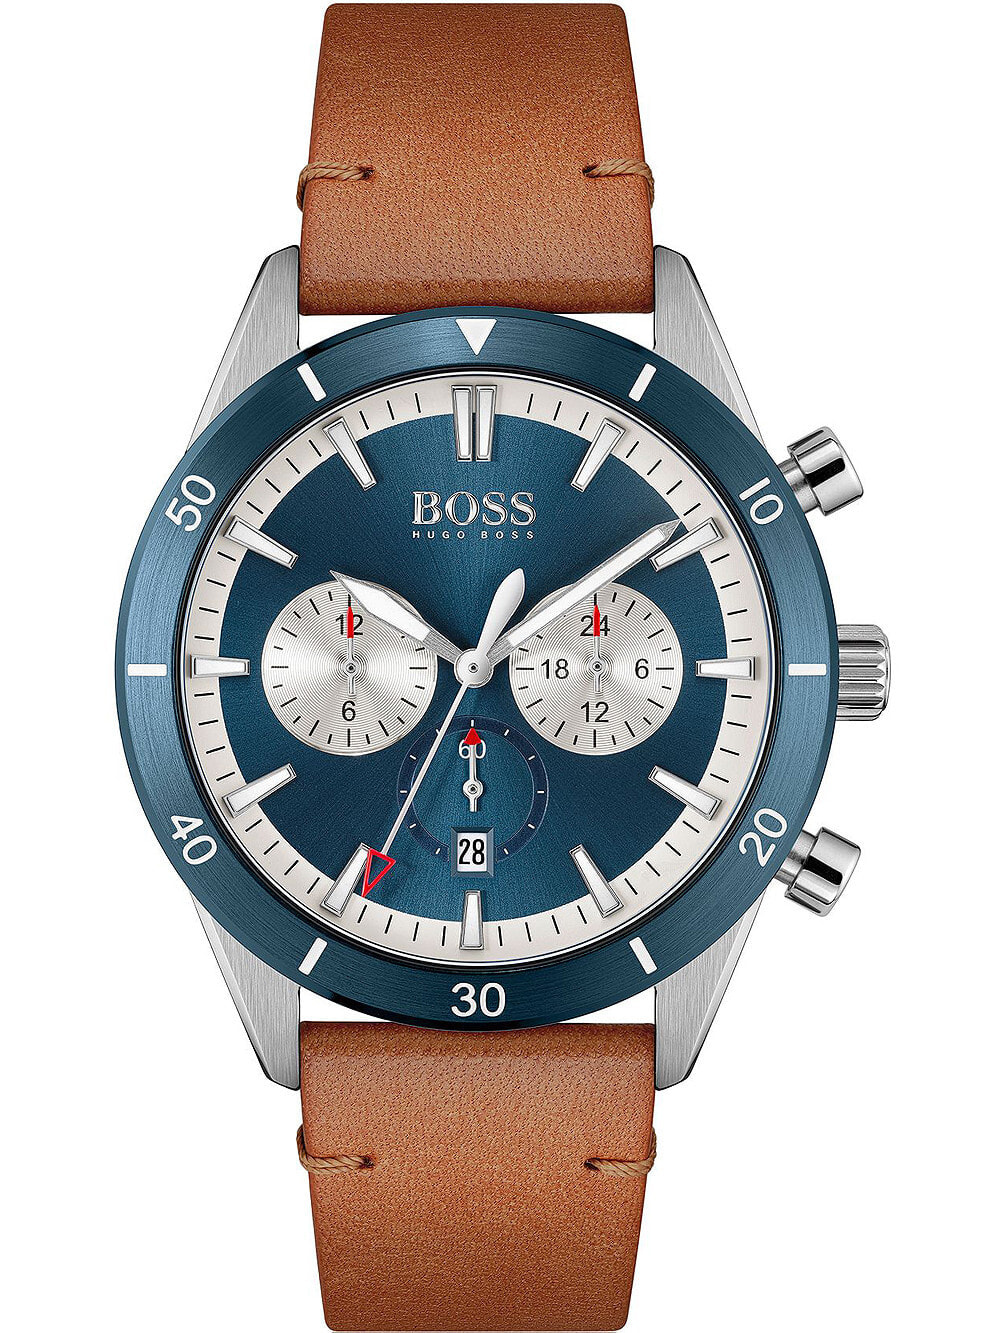 Мужские наручные часы с коричневым кожаным ремешком  Hugo Boss 1513860 Santiago mens 44mm 5ATM